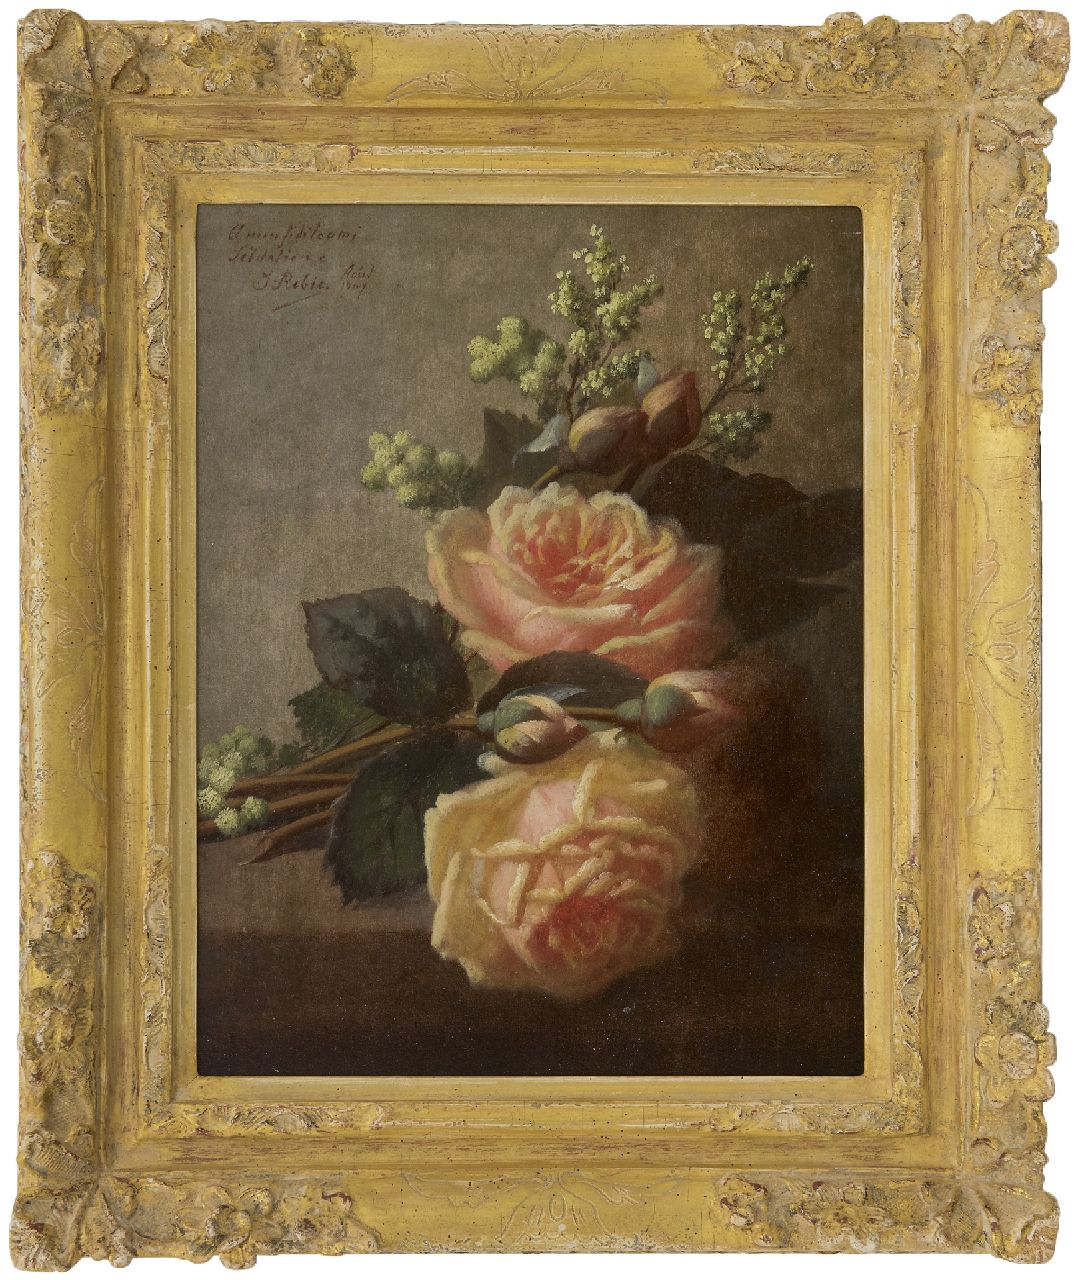 Robie J.B.  | Jean-Baptiste Robie | Schilderijen te koop aangeboden | Rozen op een plint, olieverf op paneel 36,3 x 27,0 cm, gesigneerd linksboven en gedateerd 'Août 1907'